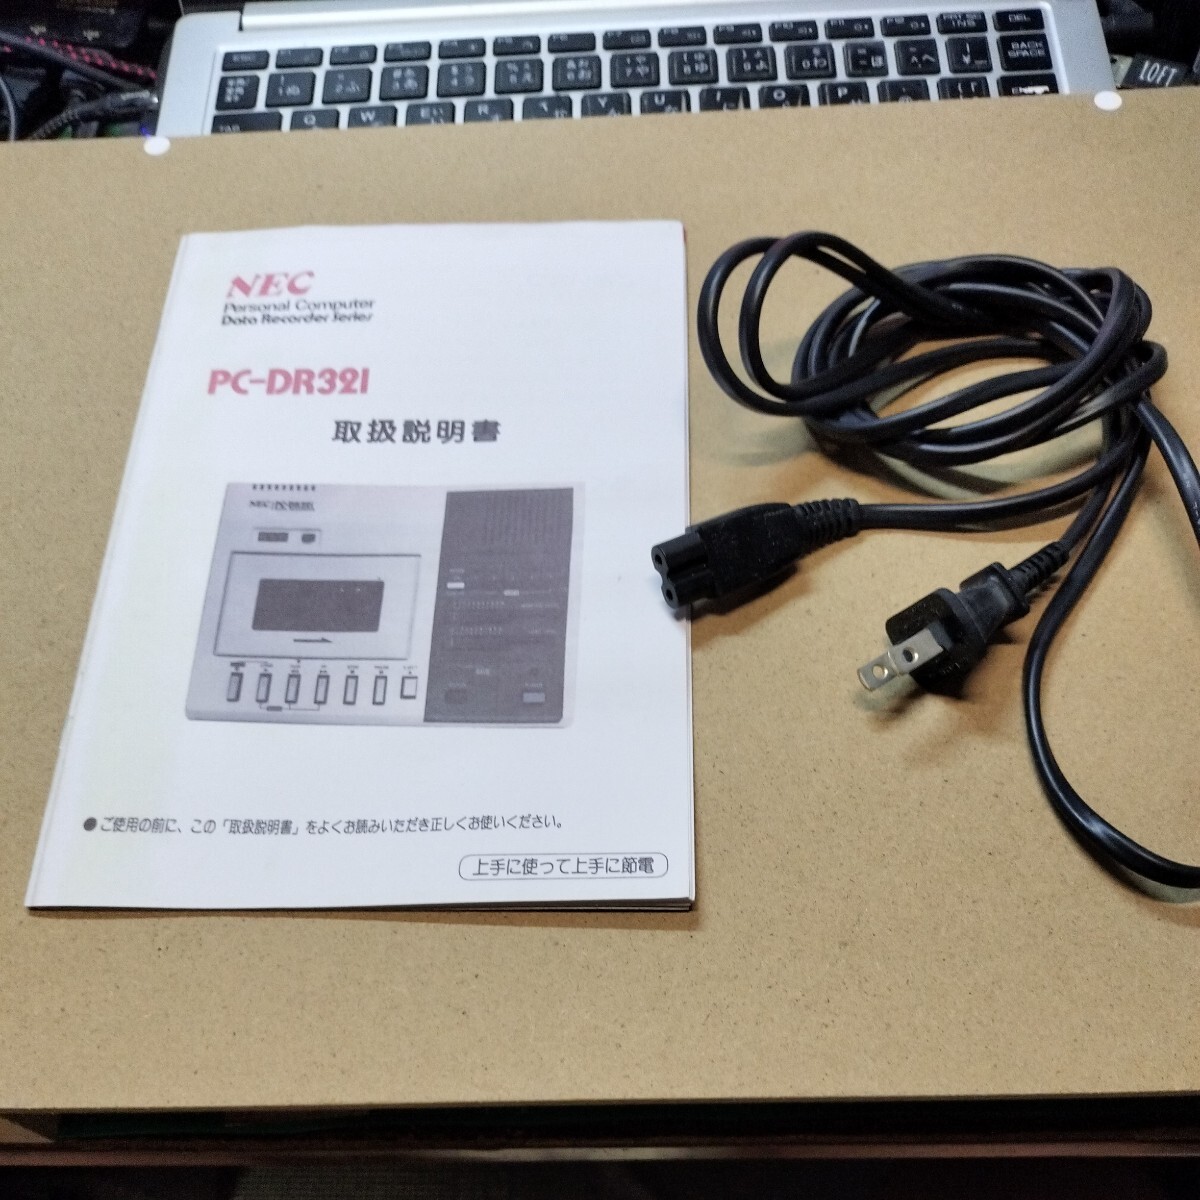  техническое обслуживание завершено NEC данные магнитофон PC-DR-321 (226)